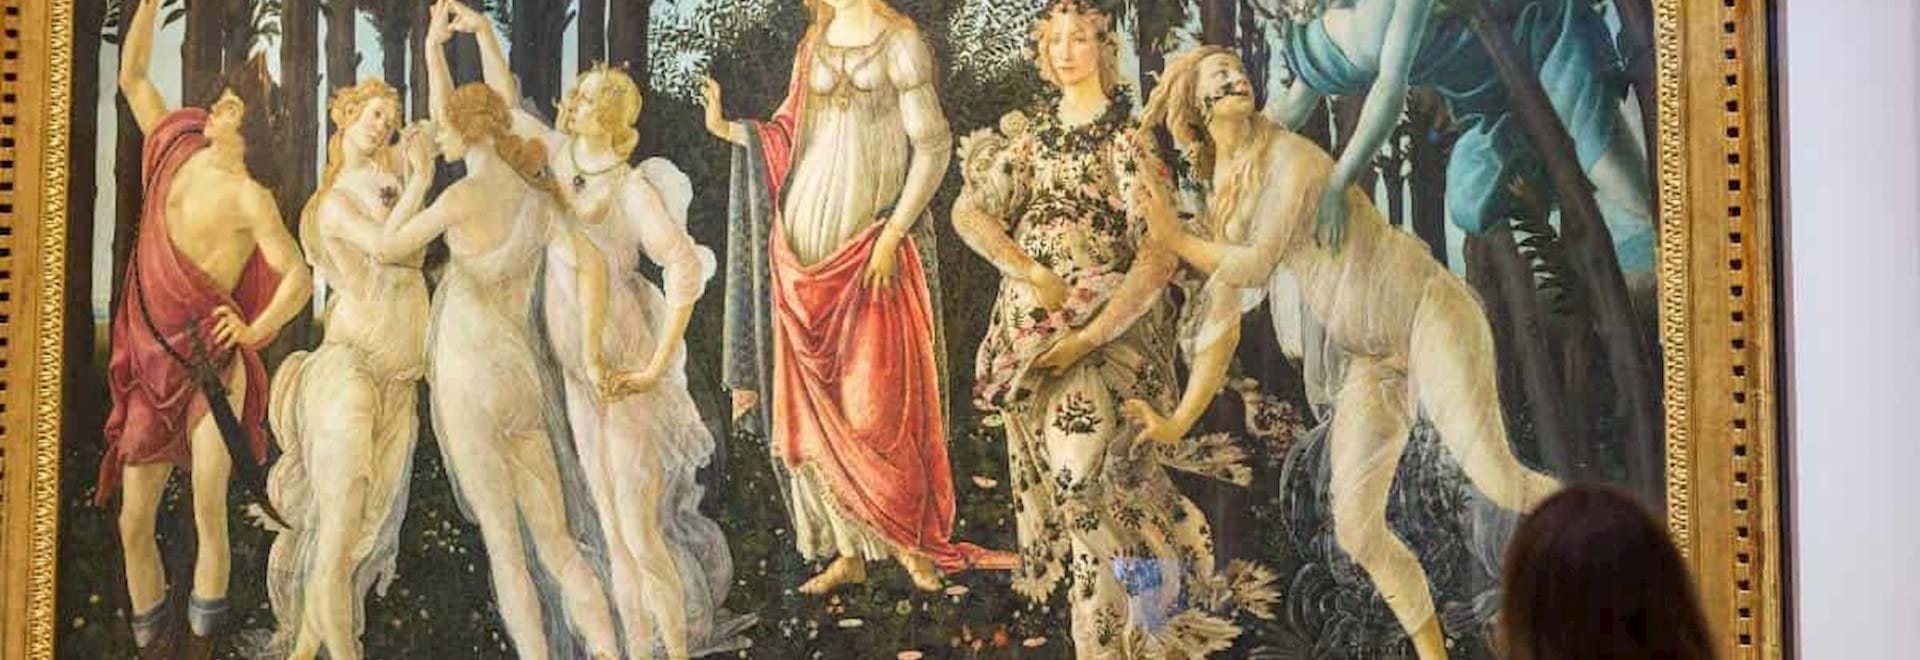 The Spring, "La Primavera" in the Uffizi Gallery